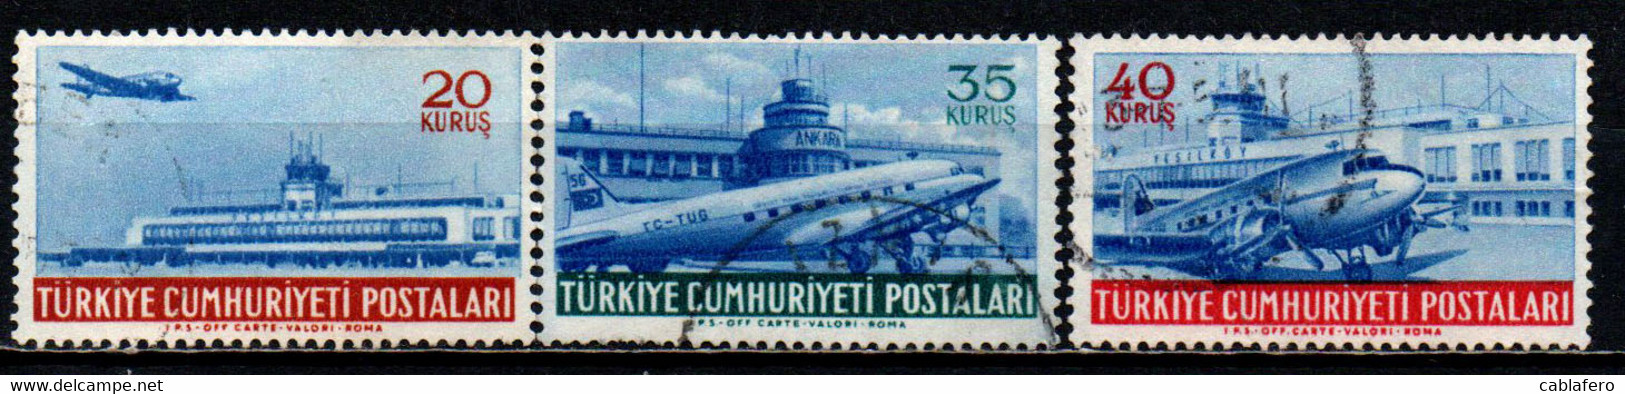 TURCHIA - 1954 - AEROPORTO DI YESILKOY E DI ANKARA - USATI - Luftpost